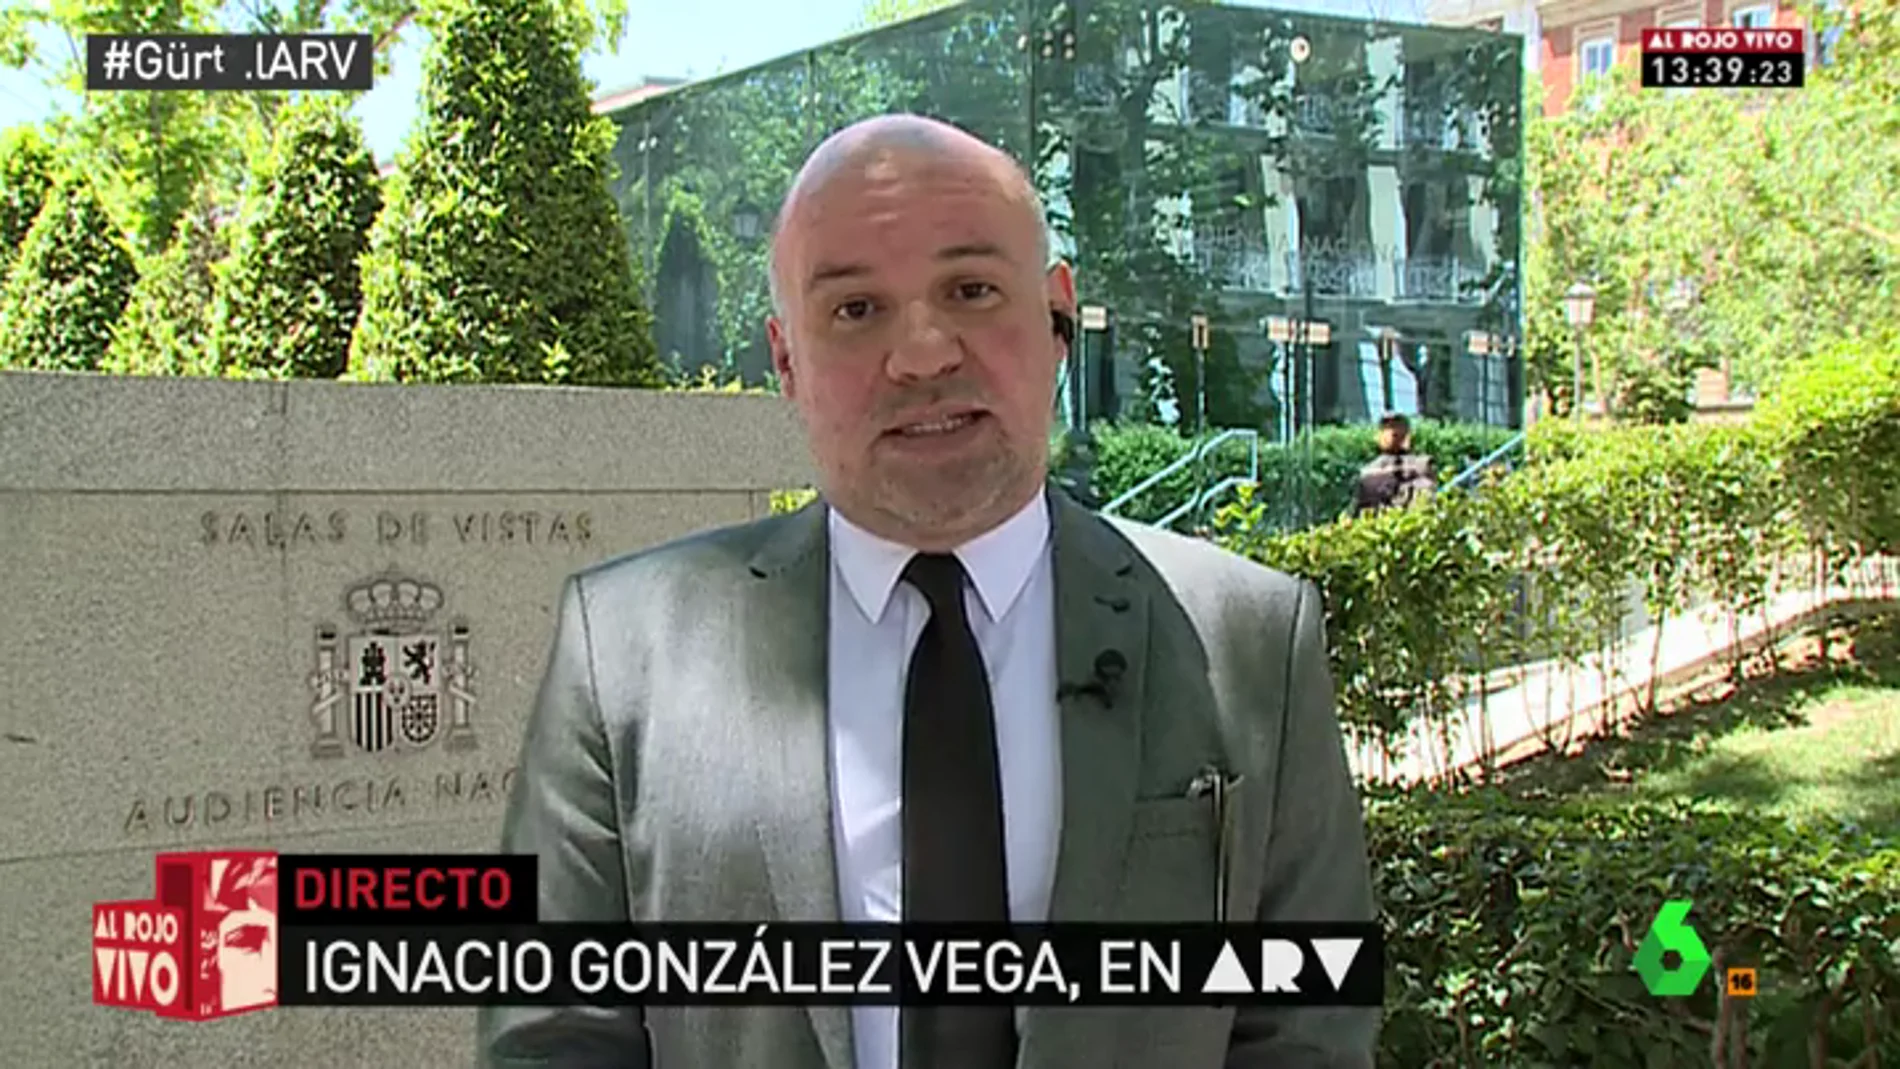 Frame 108.41247 de: González Vega: "El Ministerio de Justicia actual es un lastre y no sólo por la sectaria política de nombramientos"